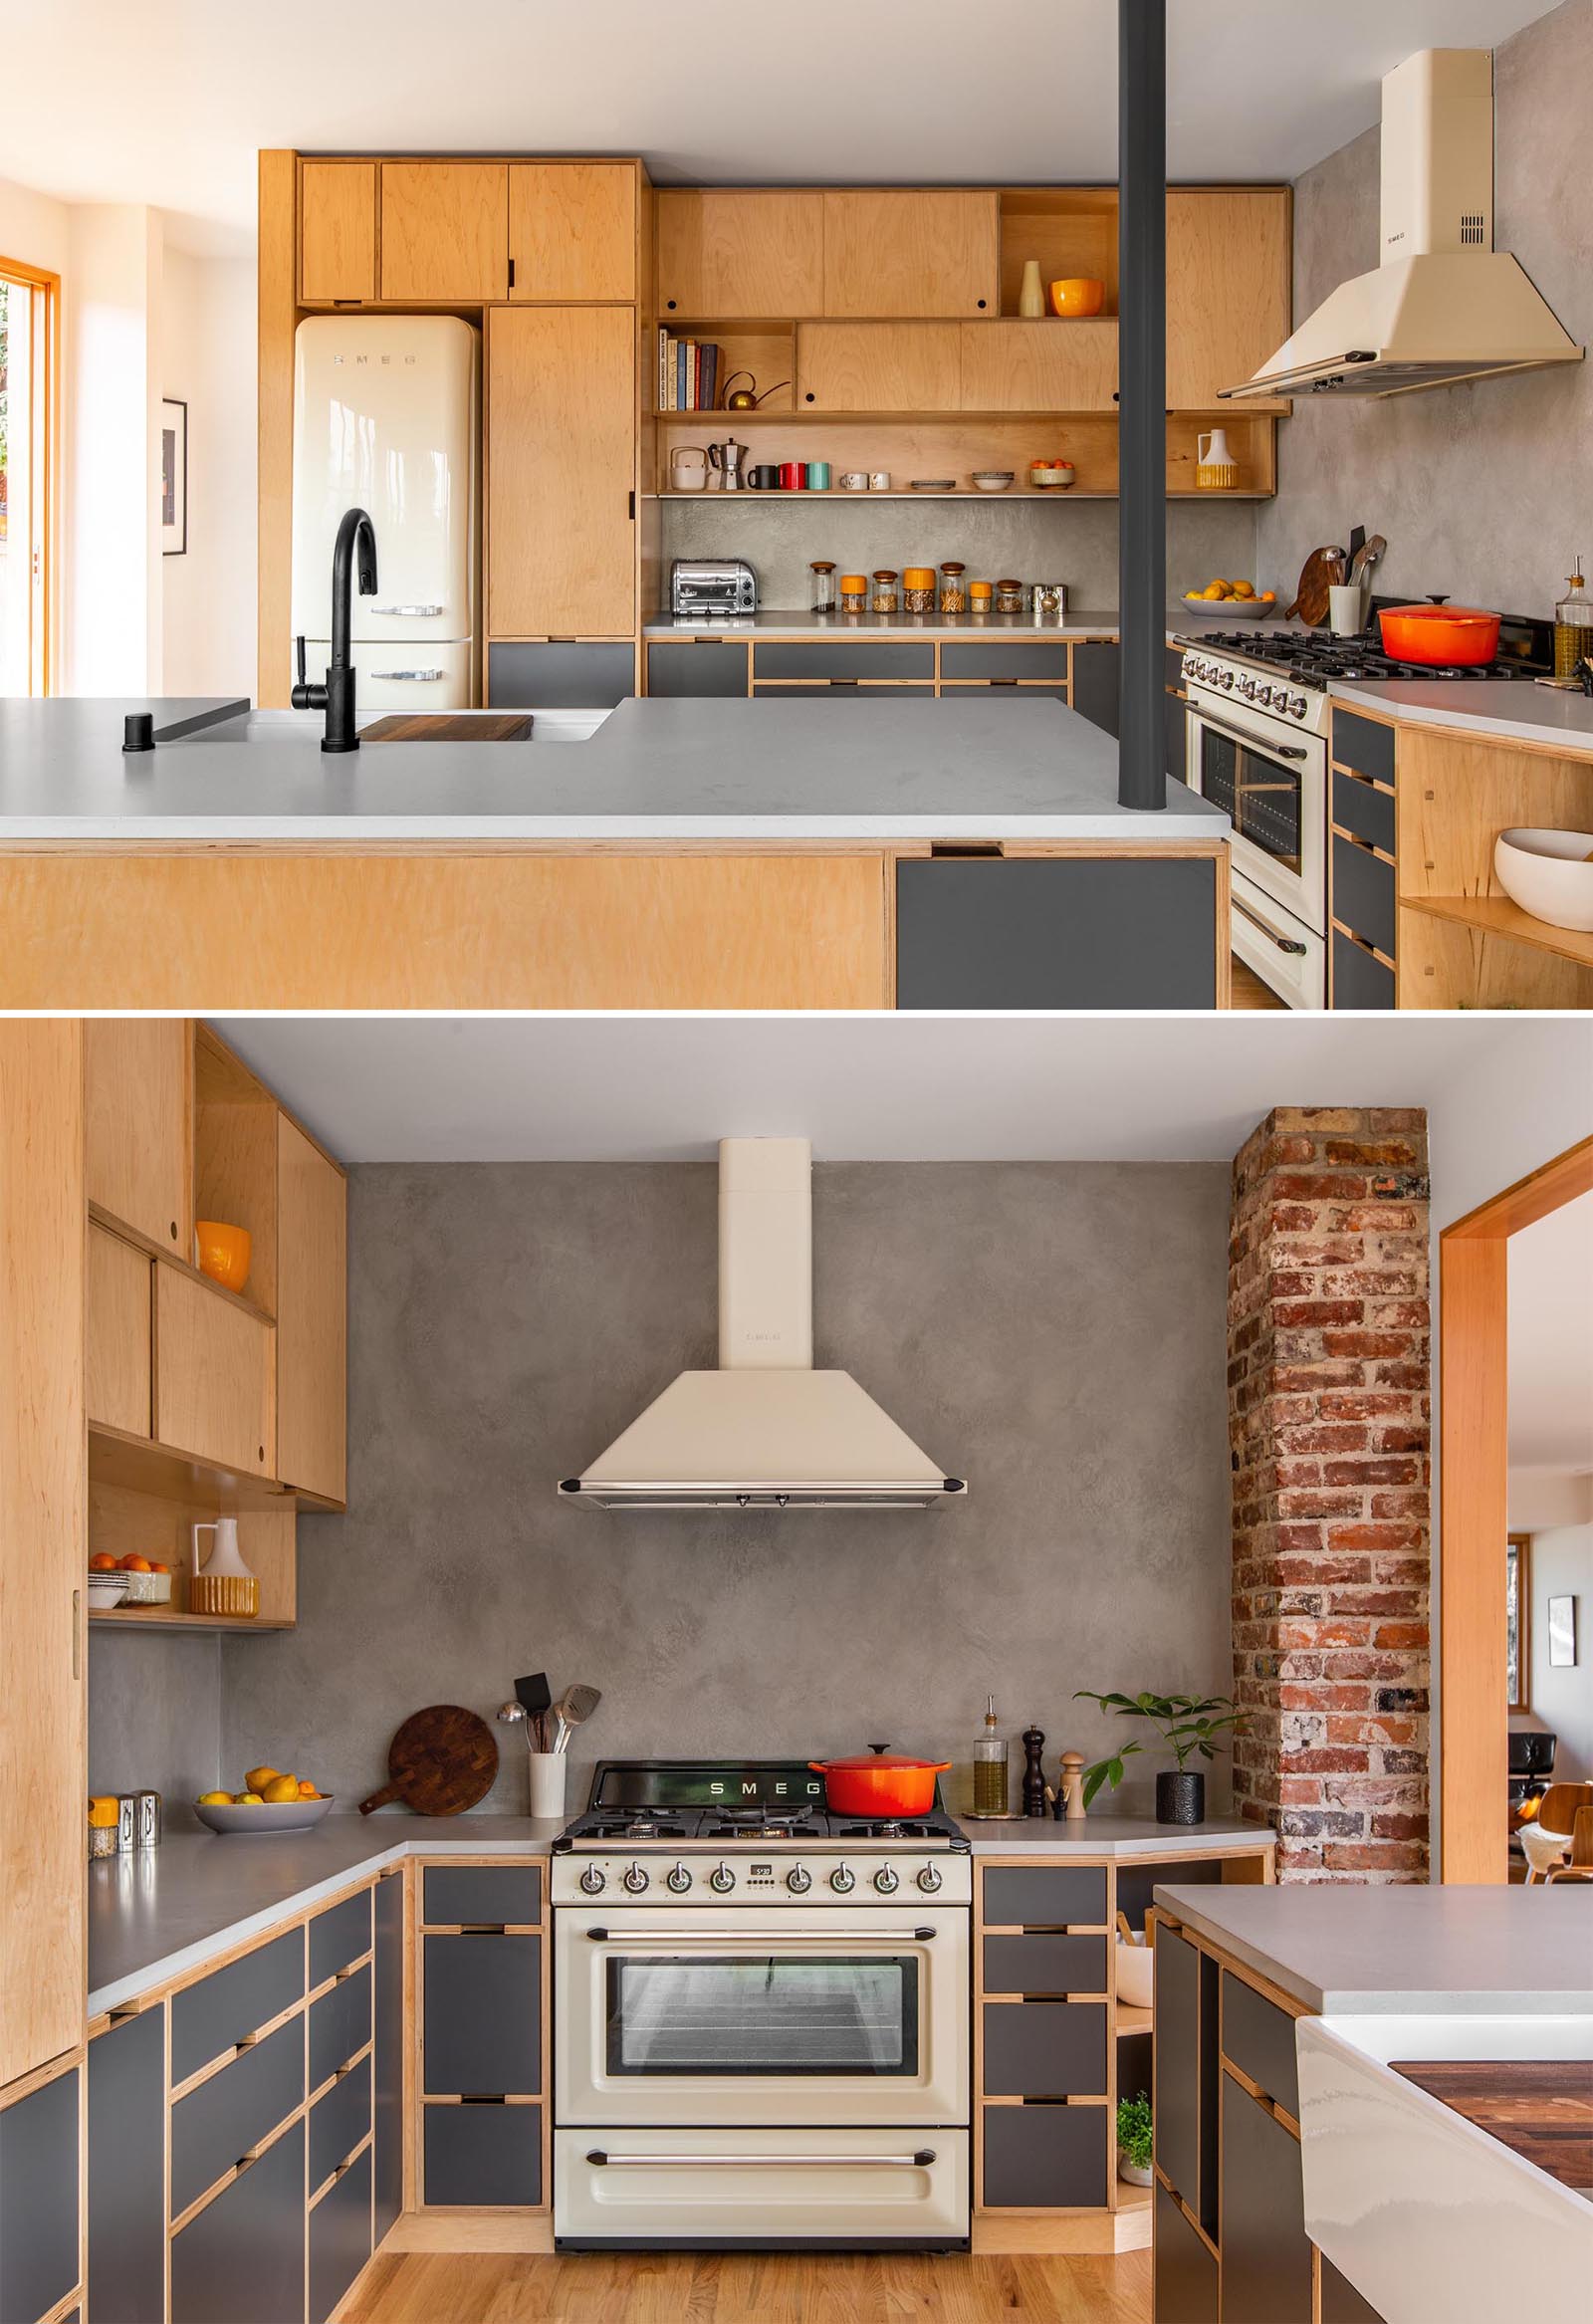 Кухня, спроектированная по индивидуальному заказу, с деревянными шкафами, созданными таким образом, чтобы максимально использовать заднюю стену.